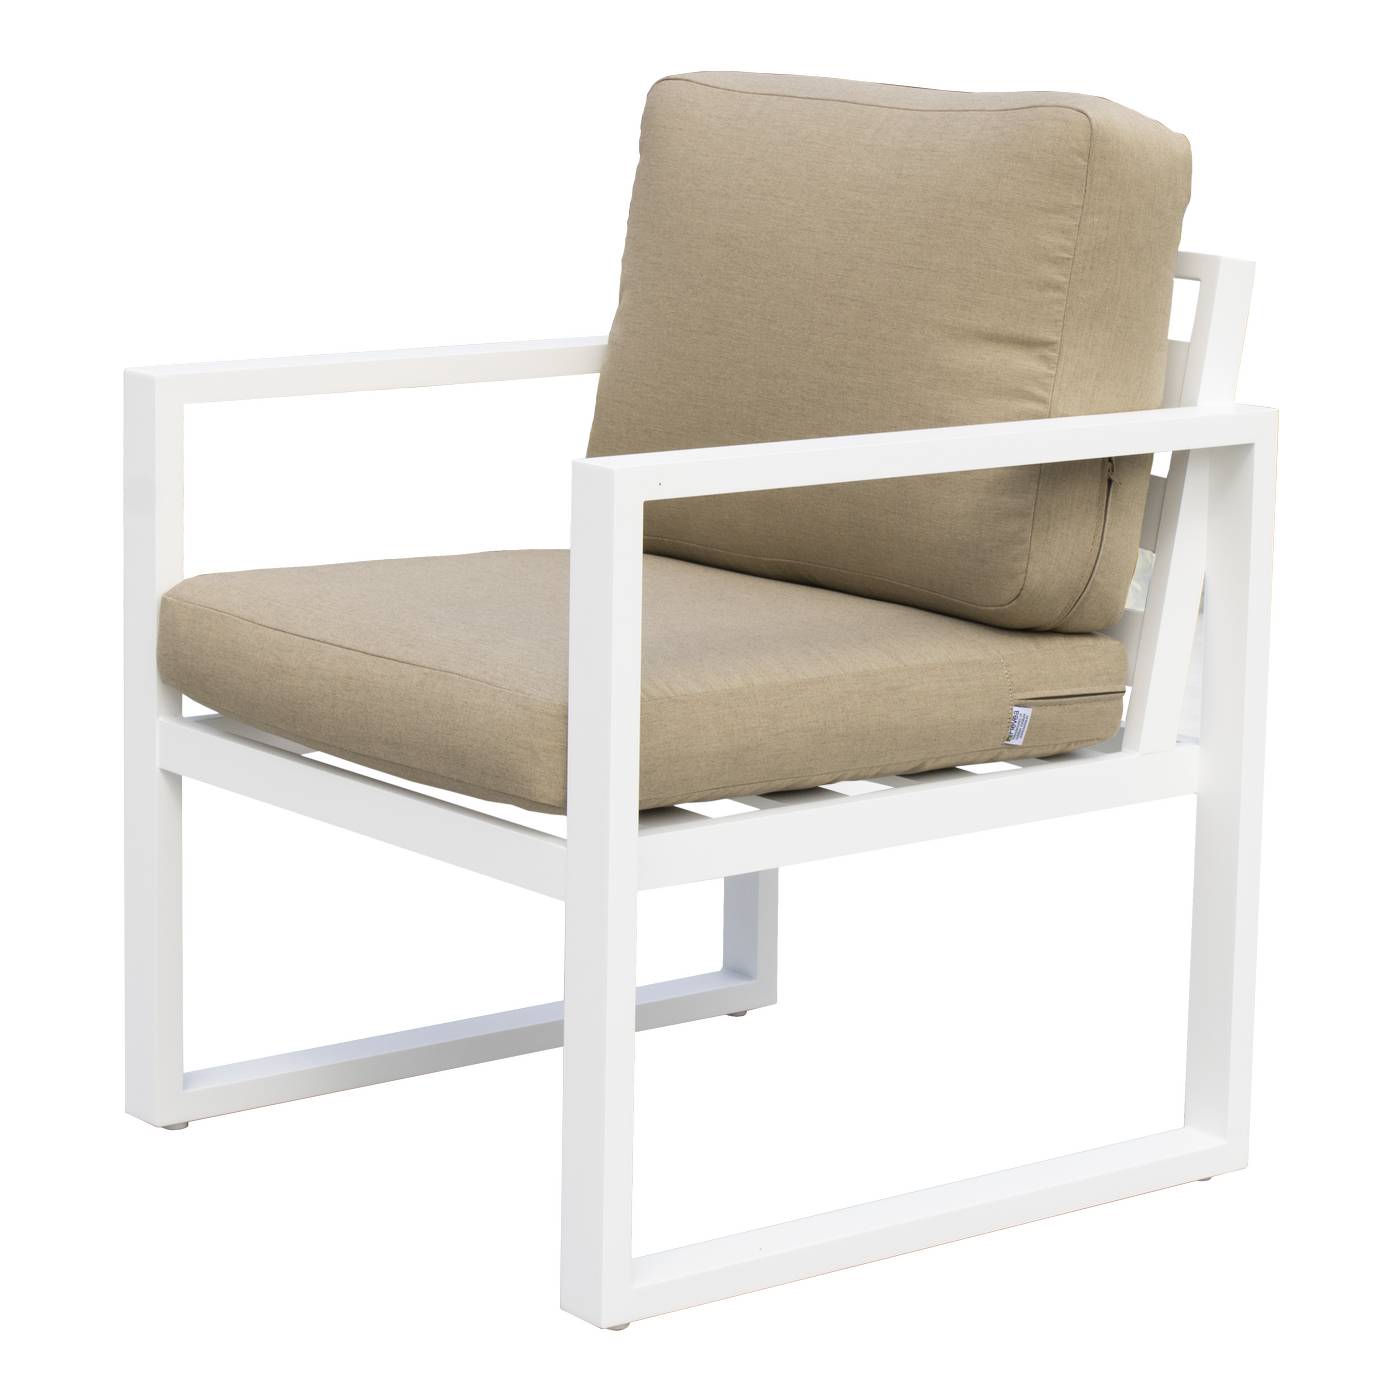 Sofá 3p + 2 sillones + mesa de aluminio [Fenix] - Conjunto de aluminio para jardín: 1 sofá 3 plazas + 2 sillones + 1 mesa de centro. Disponible en cinco colores diferentes.